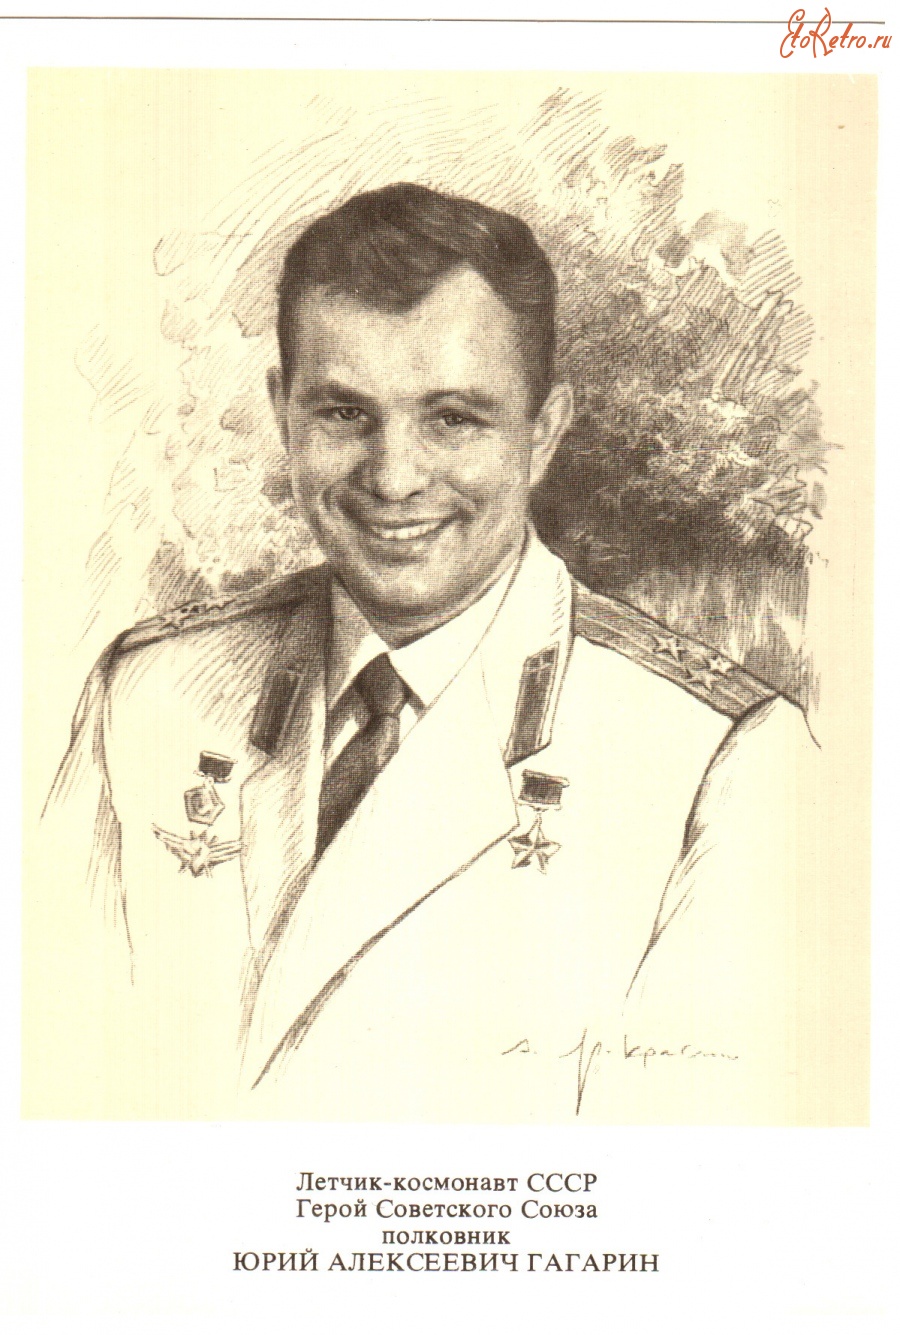 Портрет лётчика-Космонавта героя советского Союза Гагарина Юрия